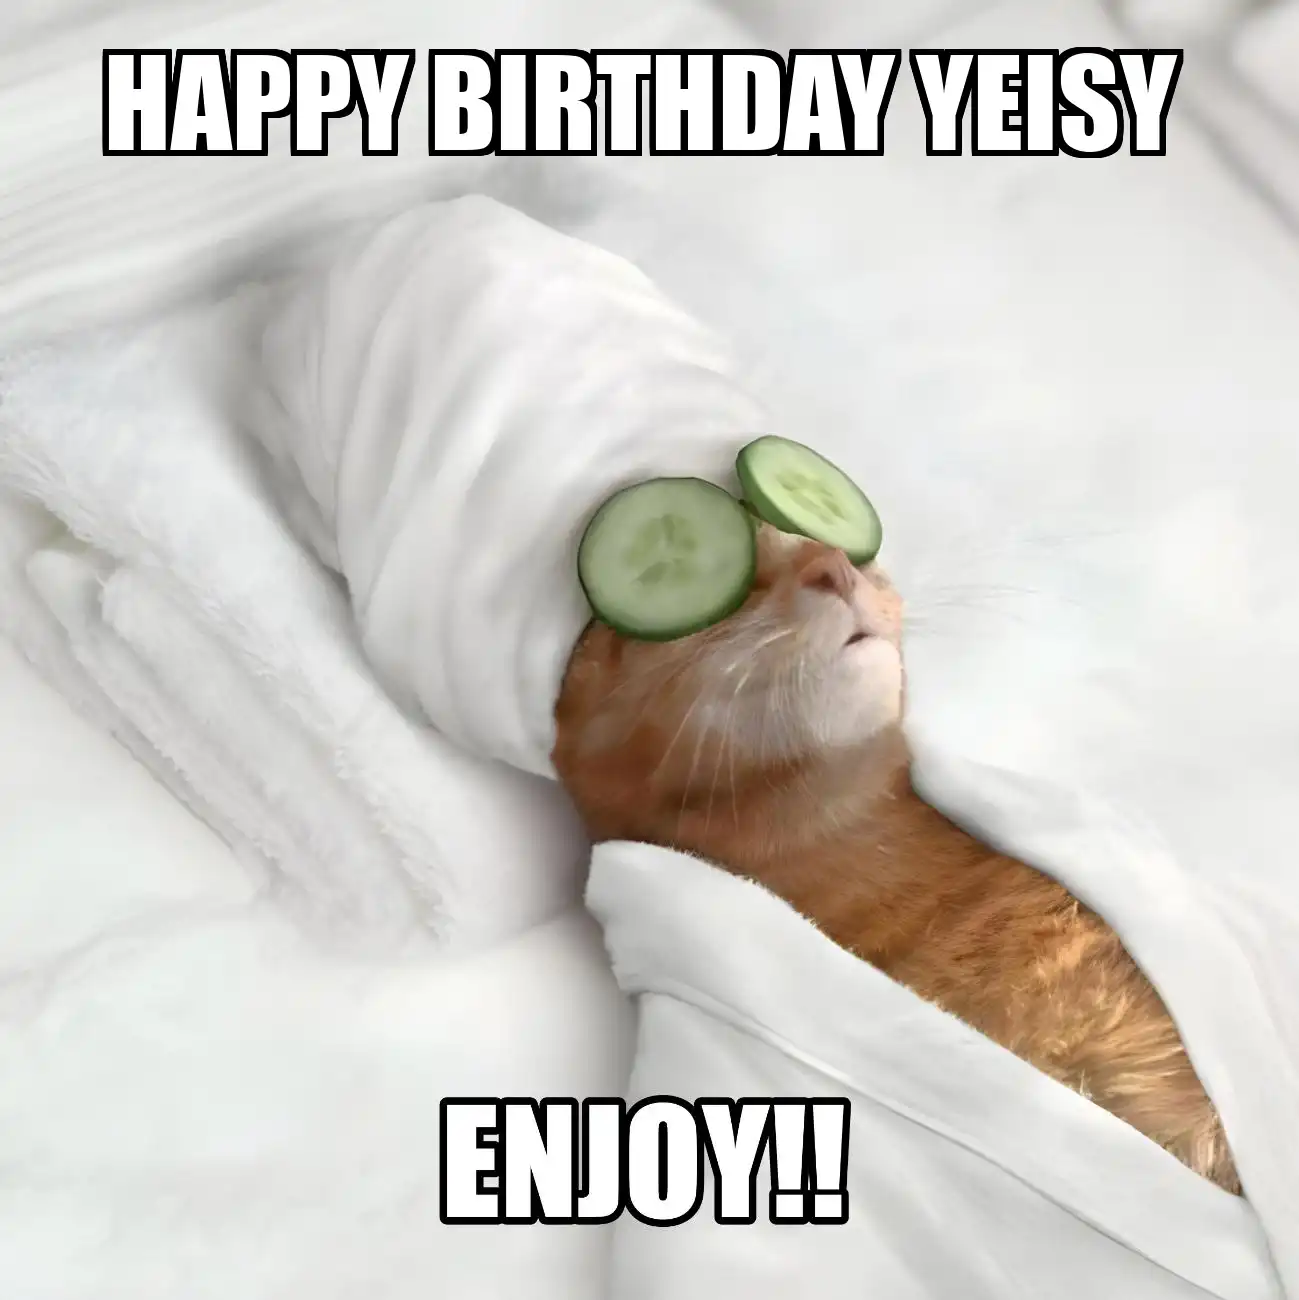 Happy Birthday Yeisy Enjoy Cat Meme